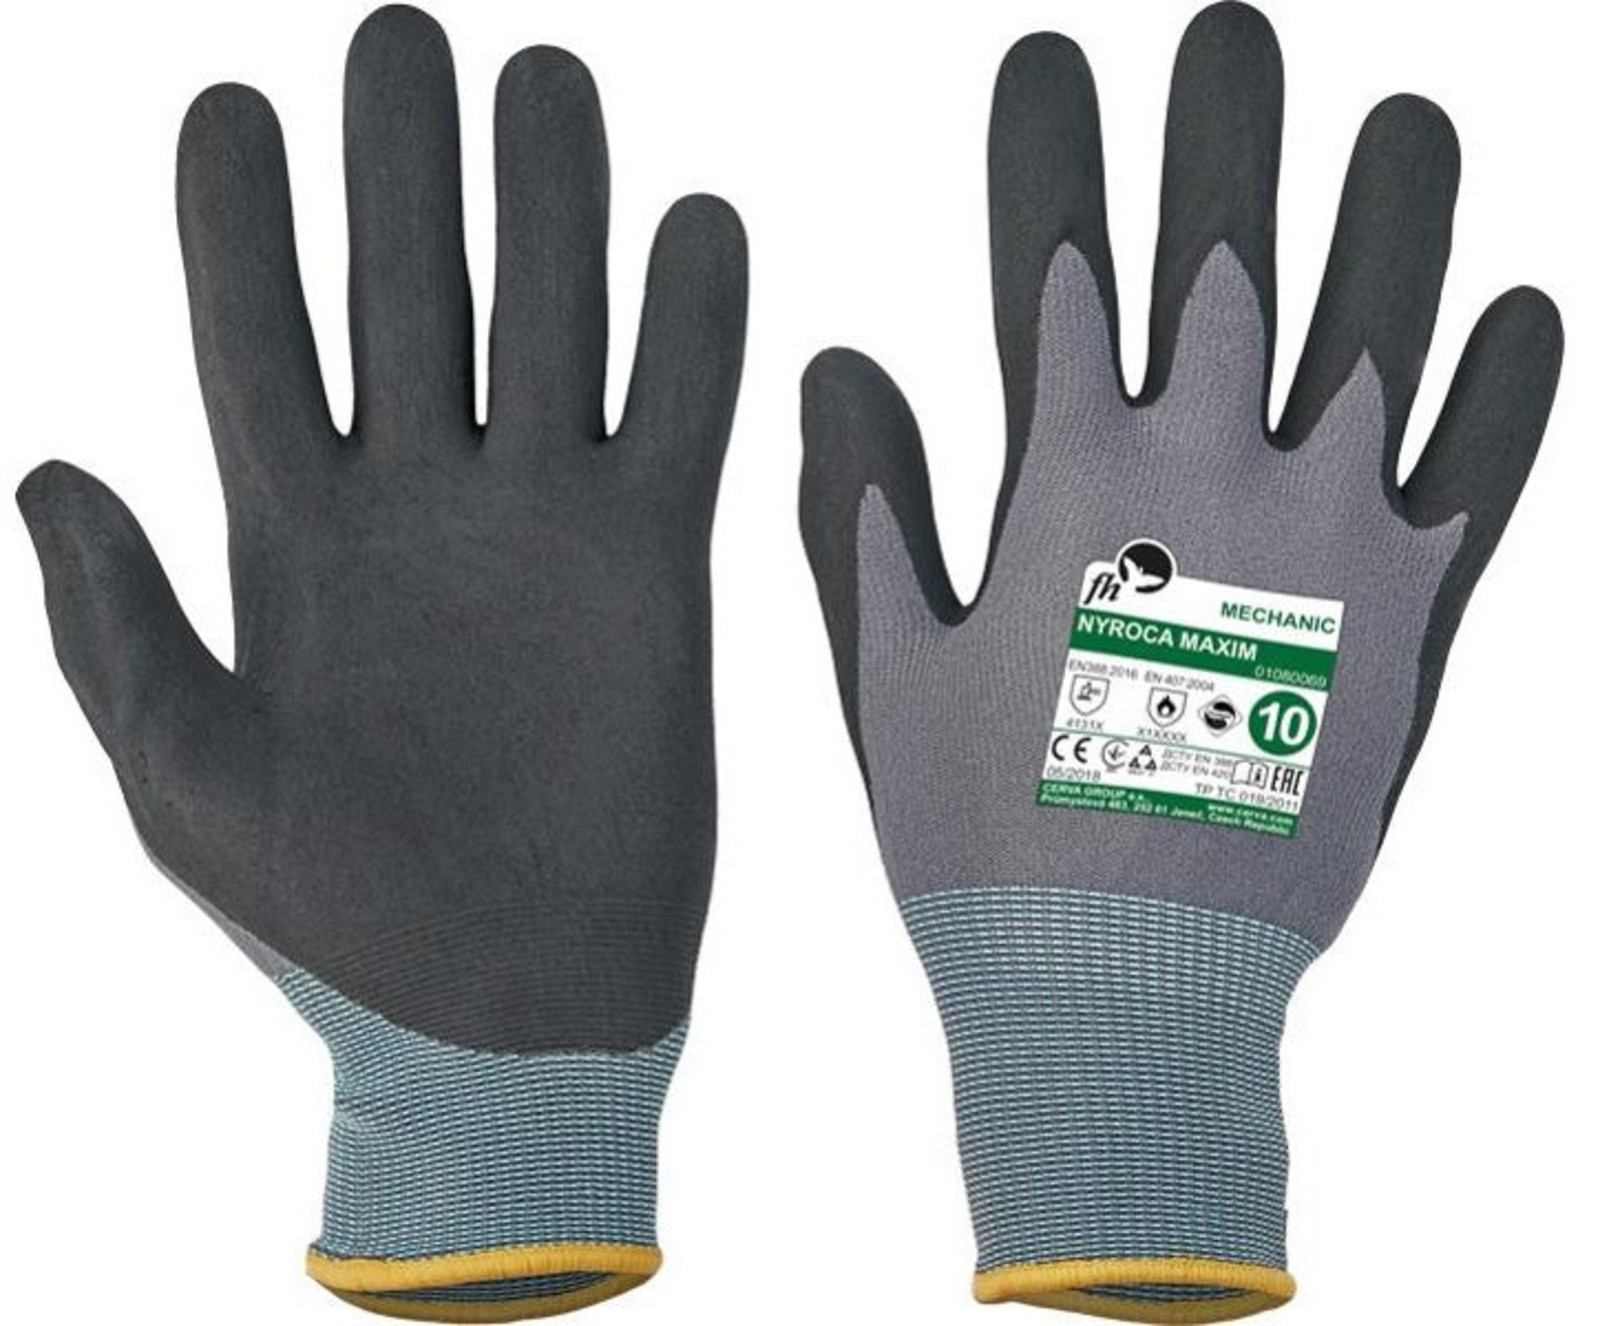 Pracovné rukavice Nyroca Maxim - veľkosť: 9/L